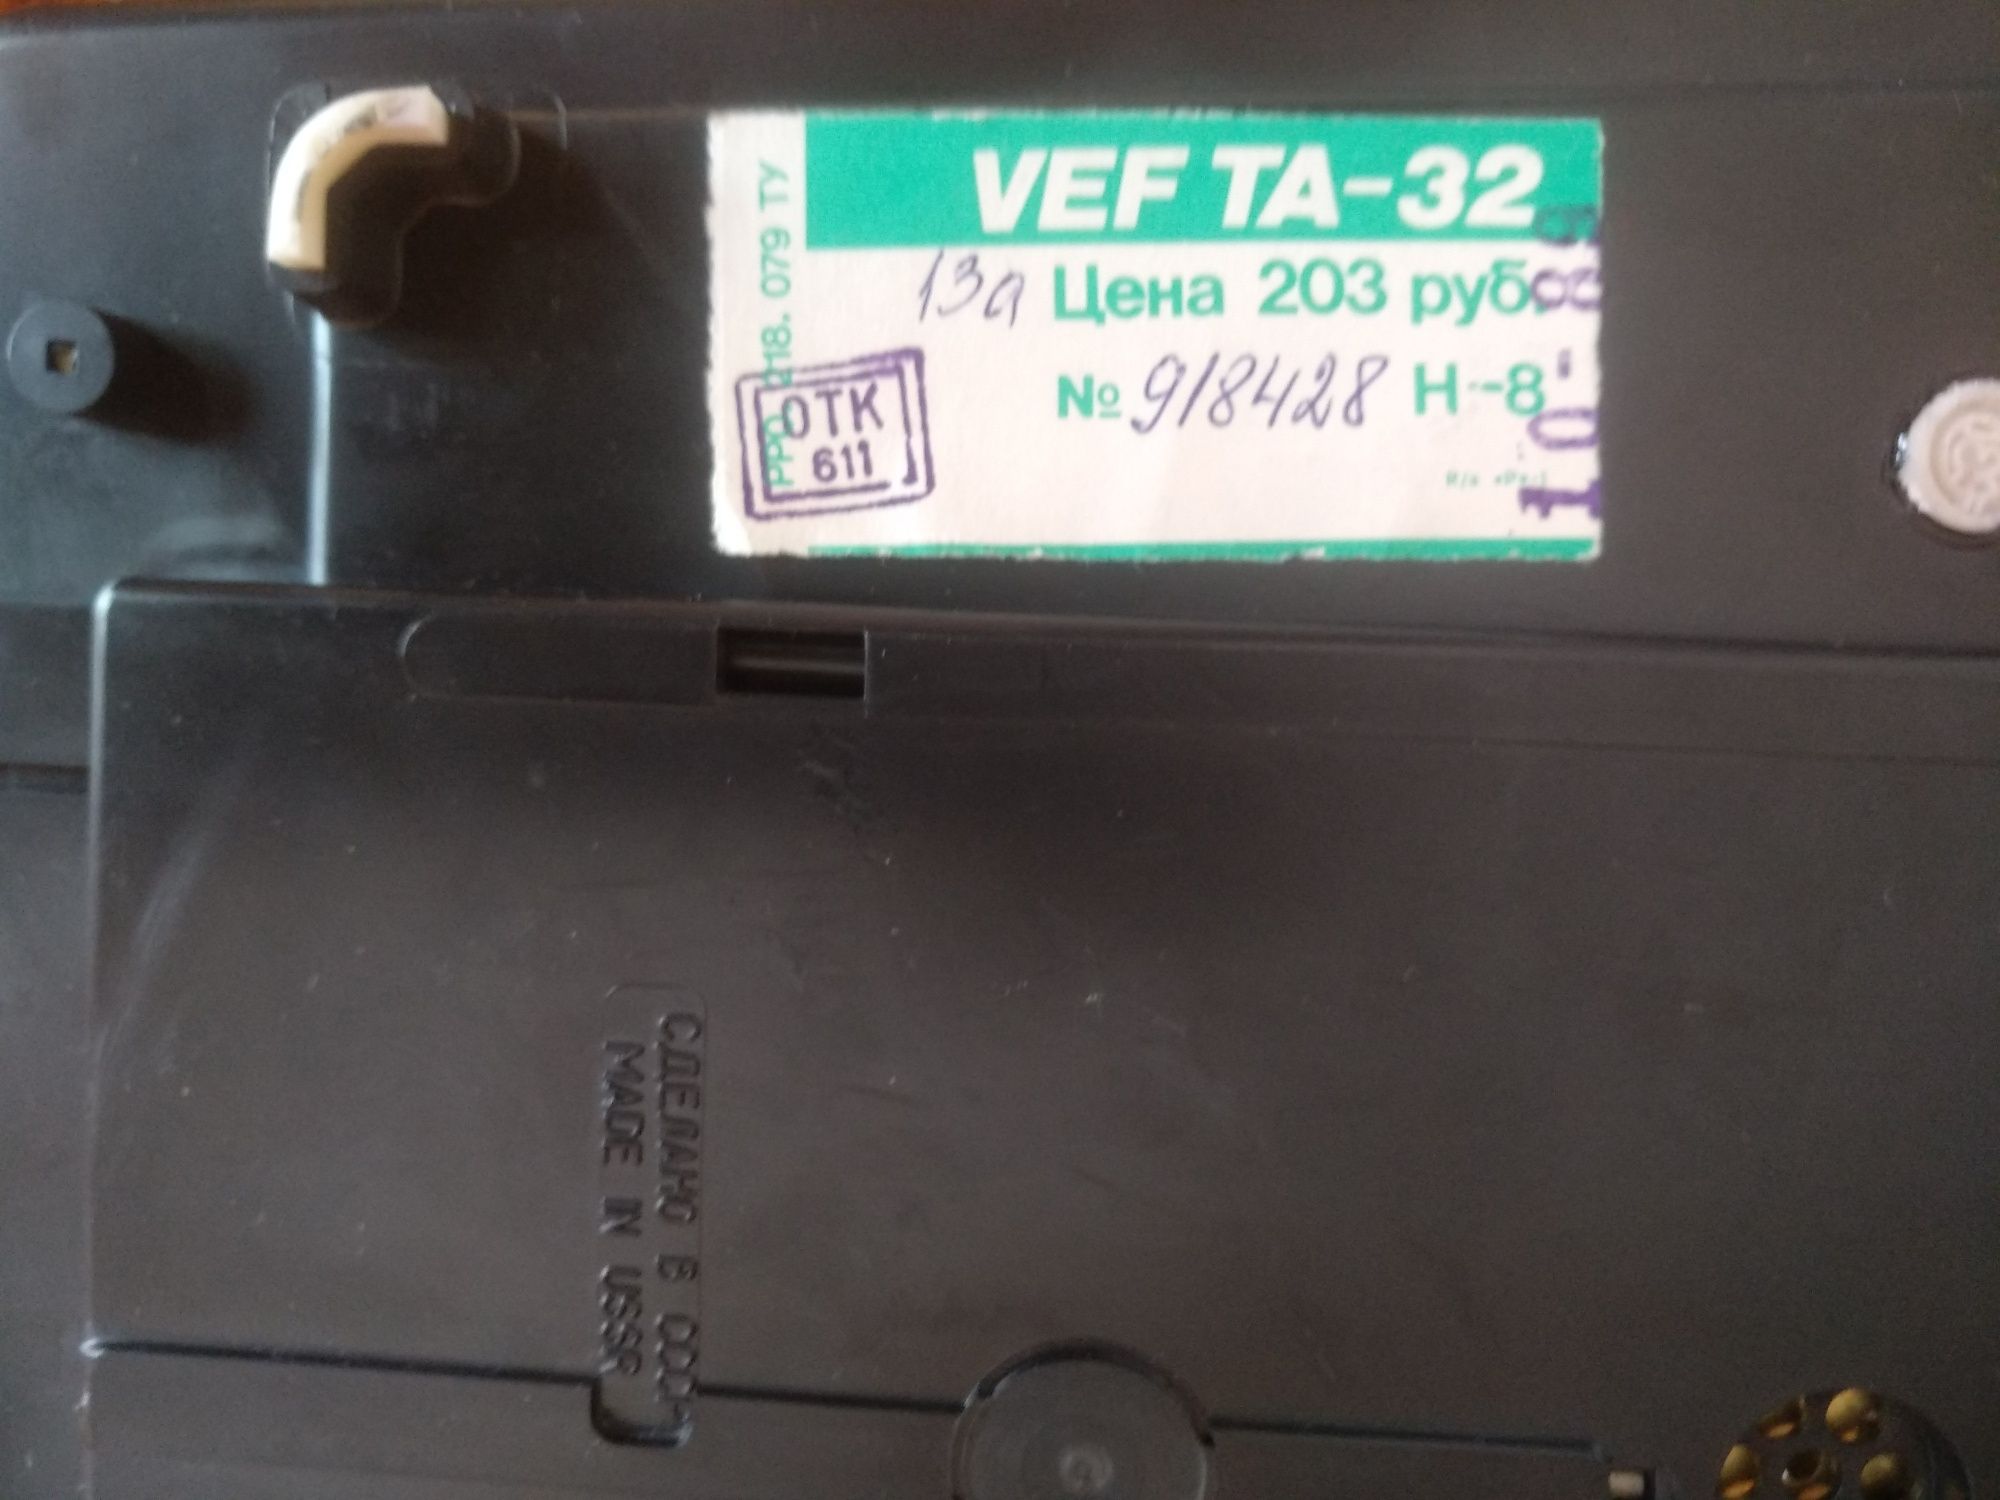 Телефон кнопковий VEF TA - 32 часів СССР